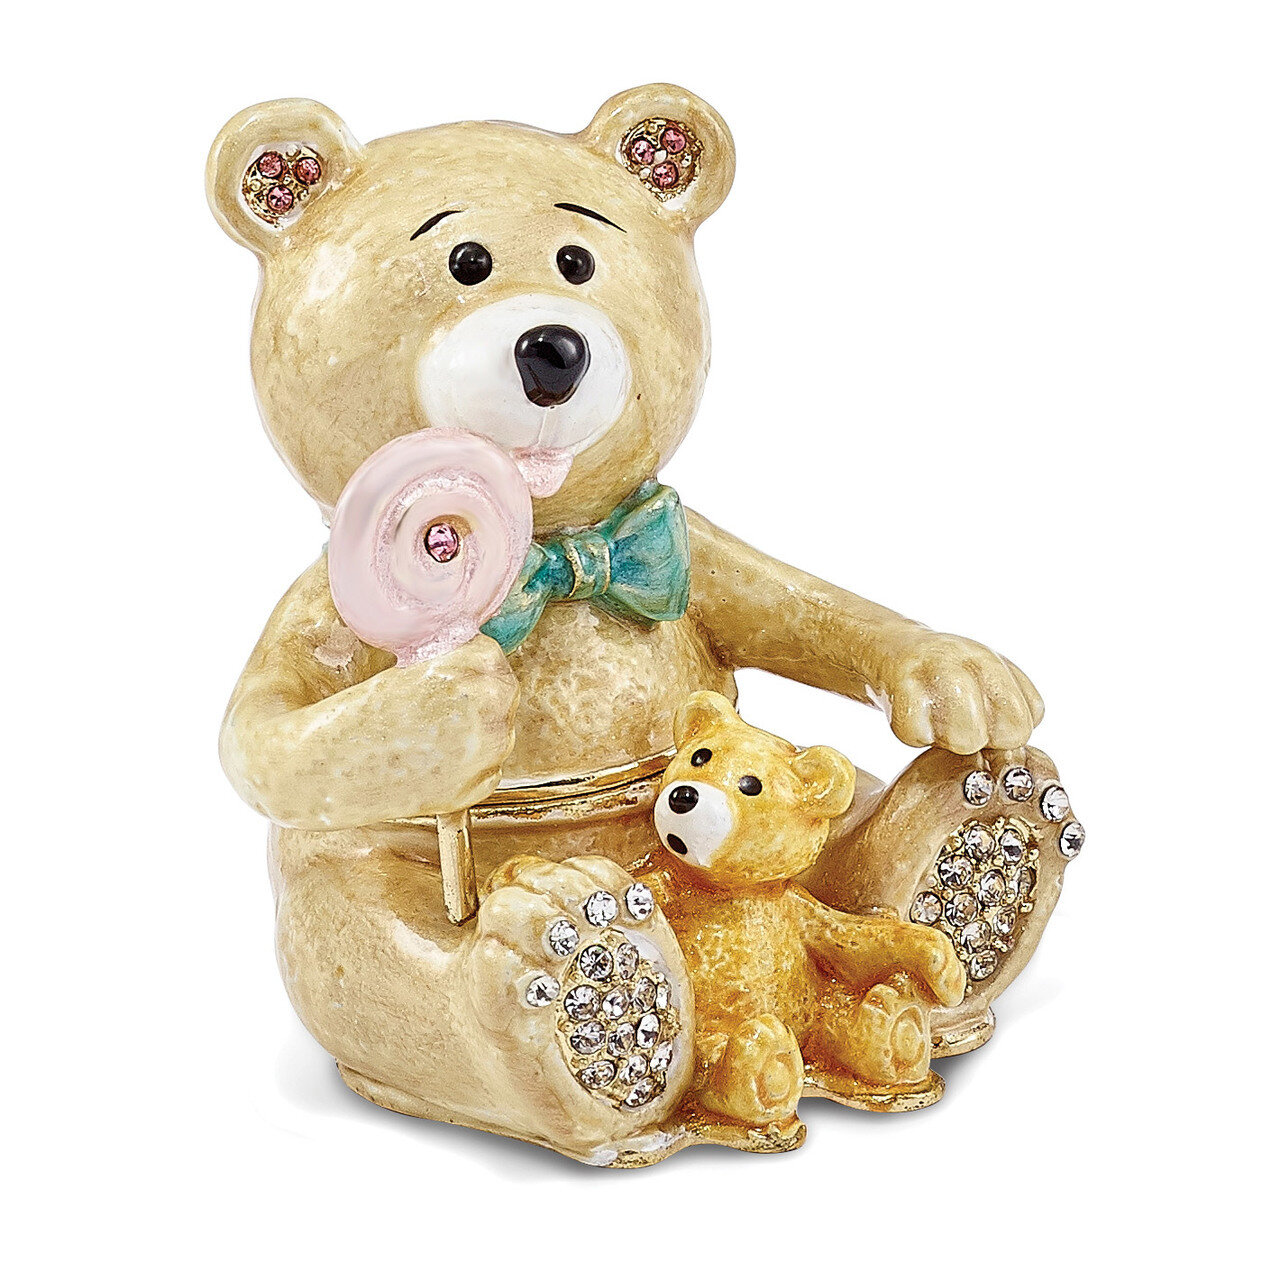 Two Teddy Bears Trinket Box Enamel on Pewter by Jere